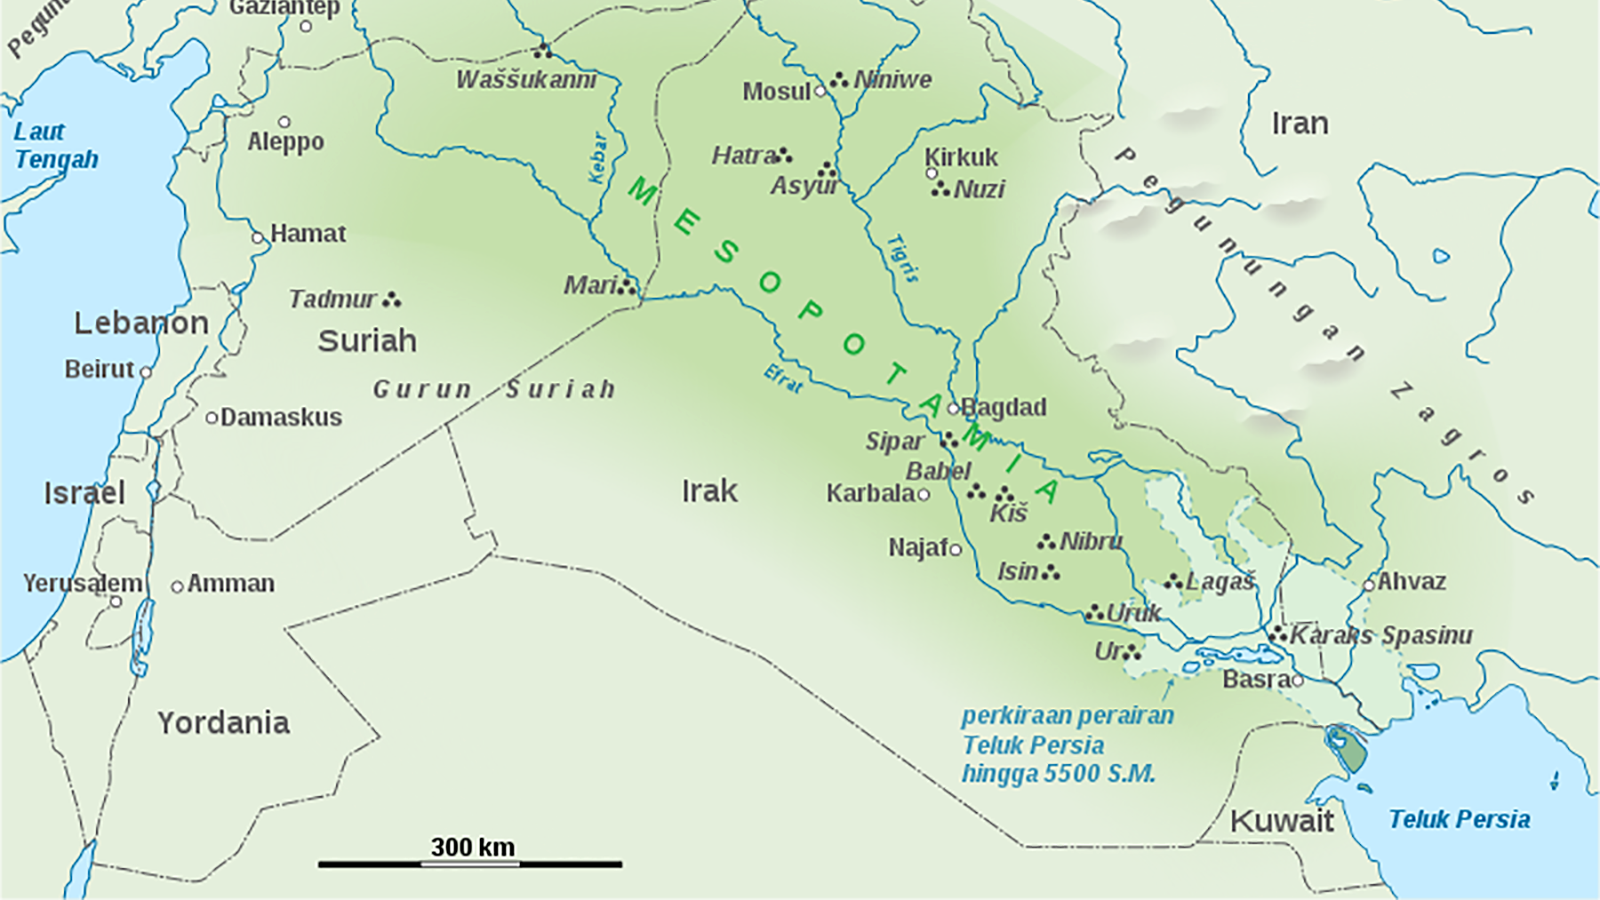 Реки тигр и Евфрат на карте. Междуречье тигр и Евфрат на карте. Исток реки Евфрат на карте. Карта река тигр и Евфрат на карте. Реки тигр и евфрат в какой